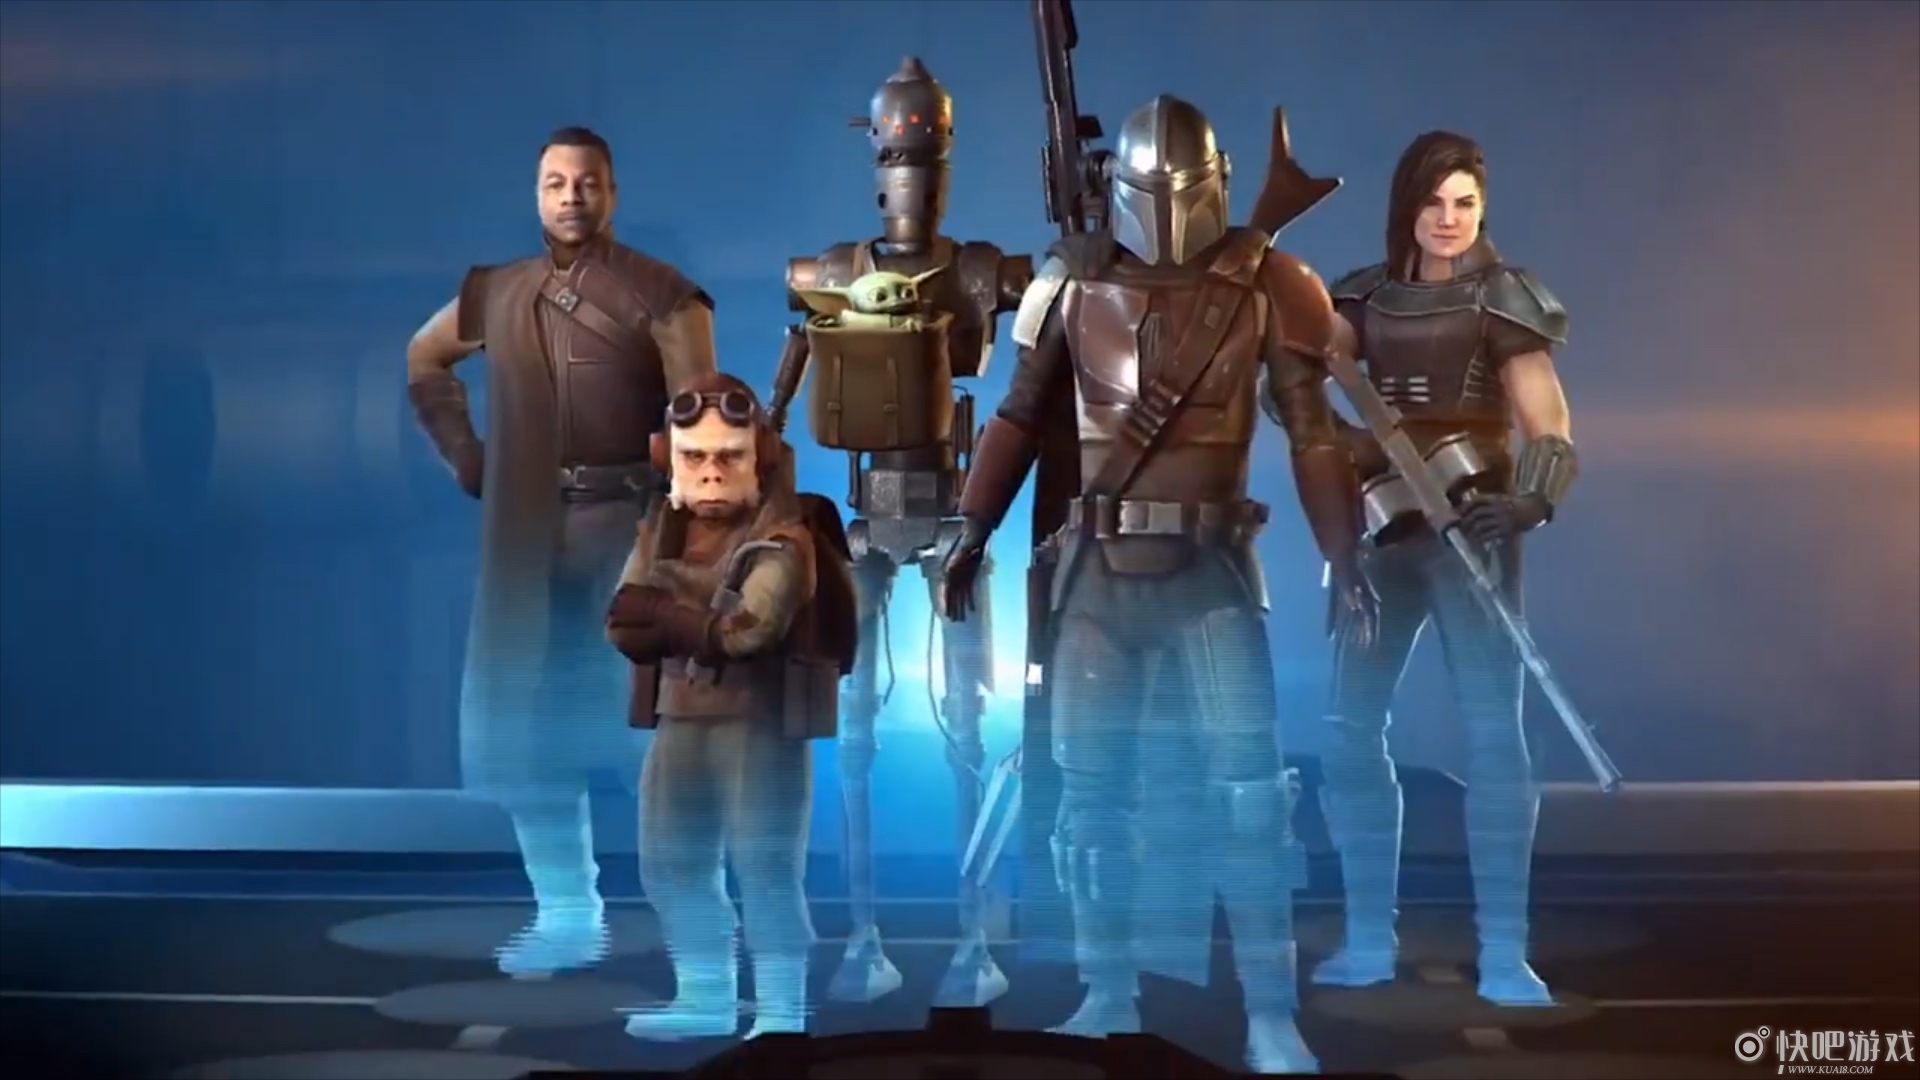 《星球大战》将采用“卢卡斯影业游戏”标识